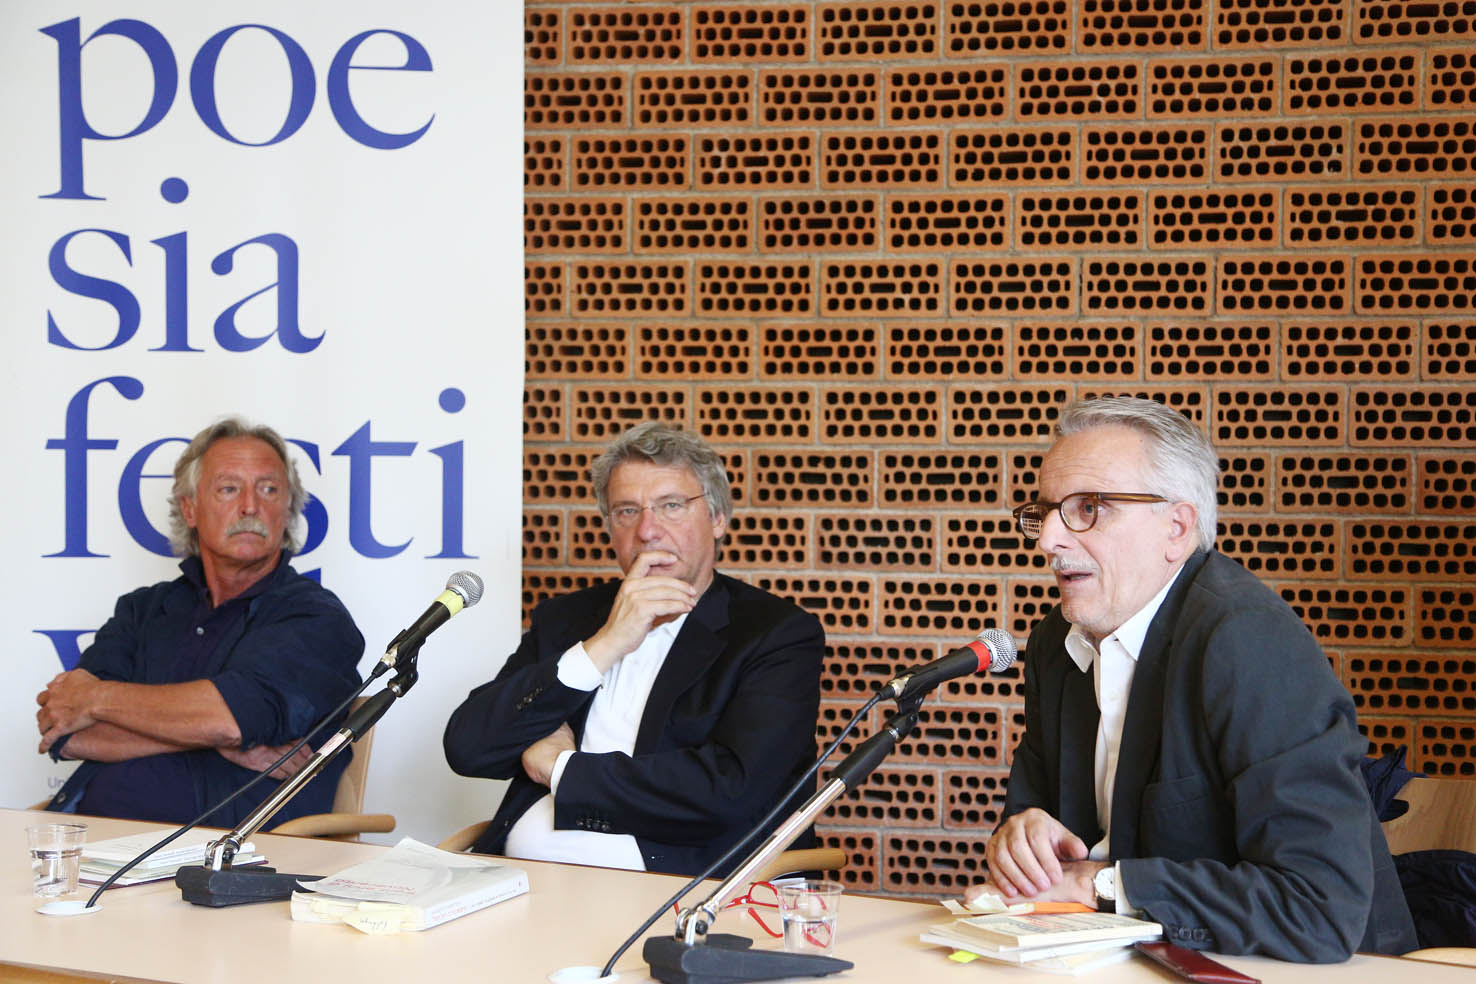 Incontro con i poeti a Castelnuovo Rangone  Stefano Simoncelli e Paolo Lanaro con Alberto Bertoni . ph. © Serena Campanini